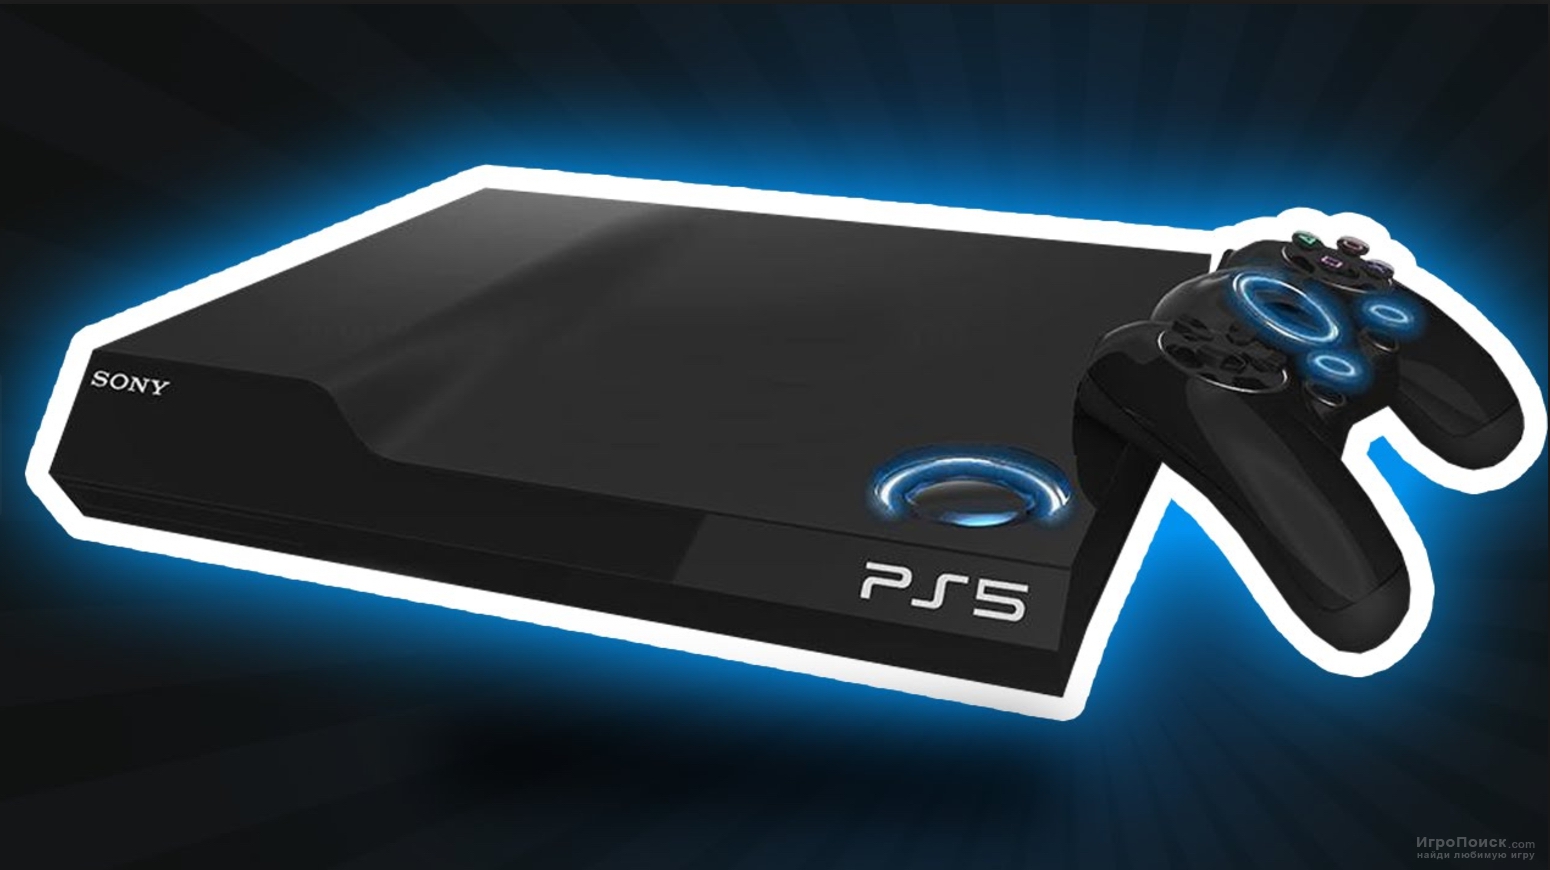 Инсайд: прототипы PlayStation 5 уже в руках у разработчиков. Первая информация о консоли может появиться в марте